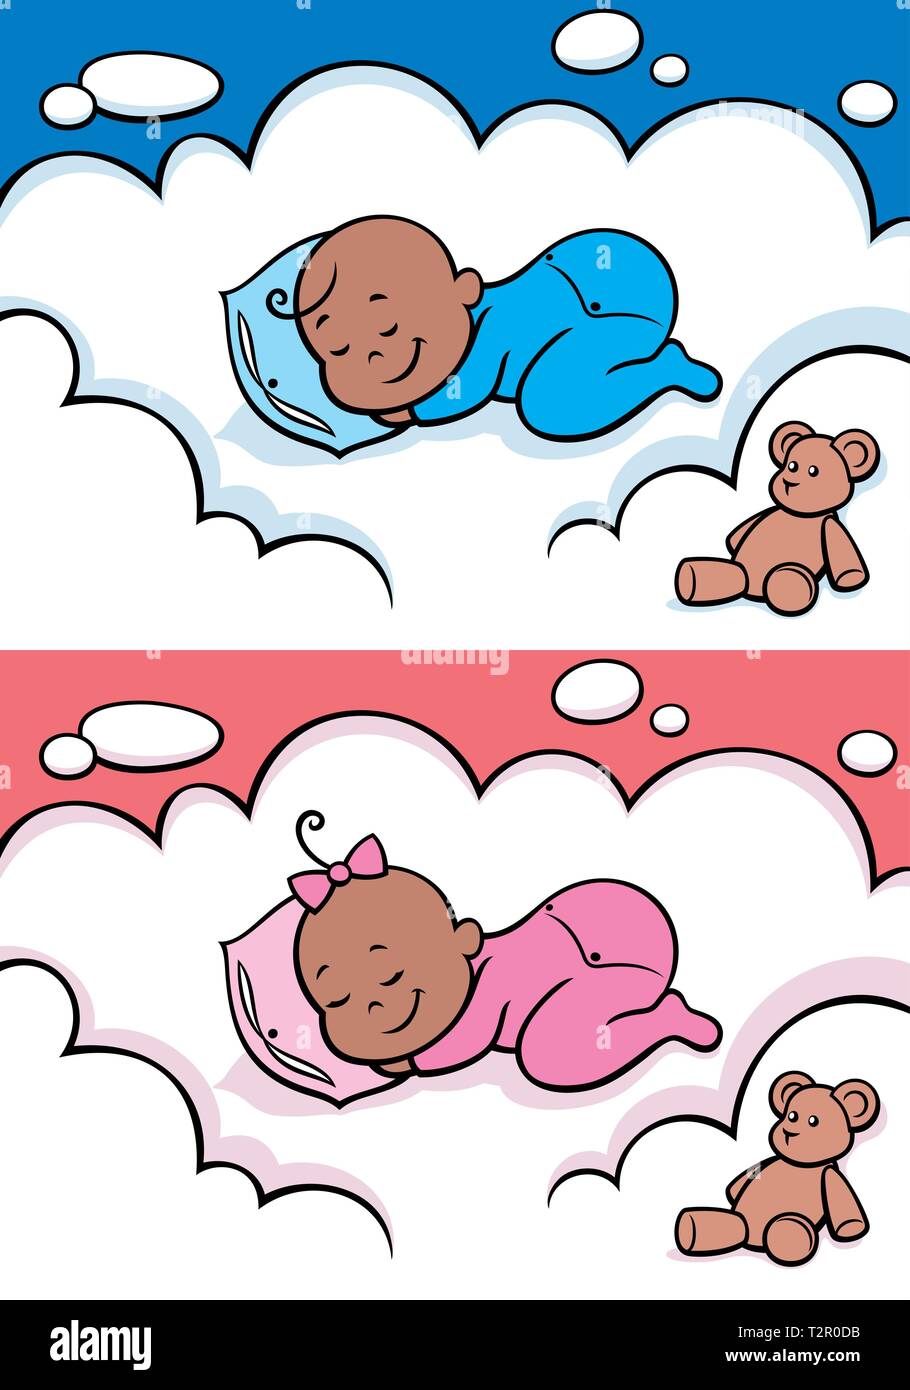 Bébé de dessin animé dormant sur le nuage. L'illustration est en 2 versions pour bébé garçon et bébé fille. Vous pouvez étendre la couleur du ciel ou la couleur blanche o Illustration de Vecteur